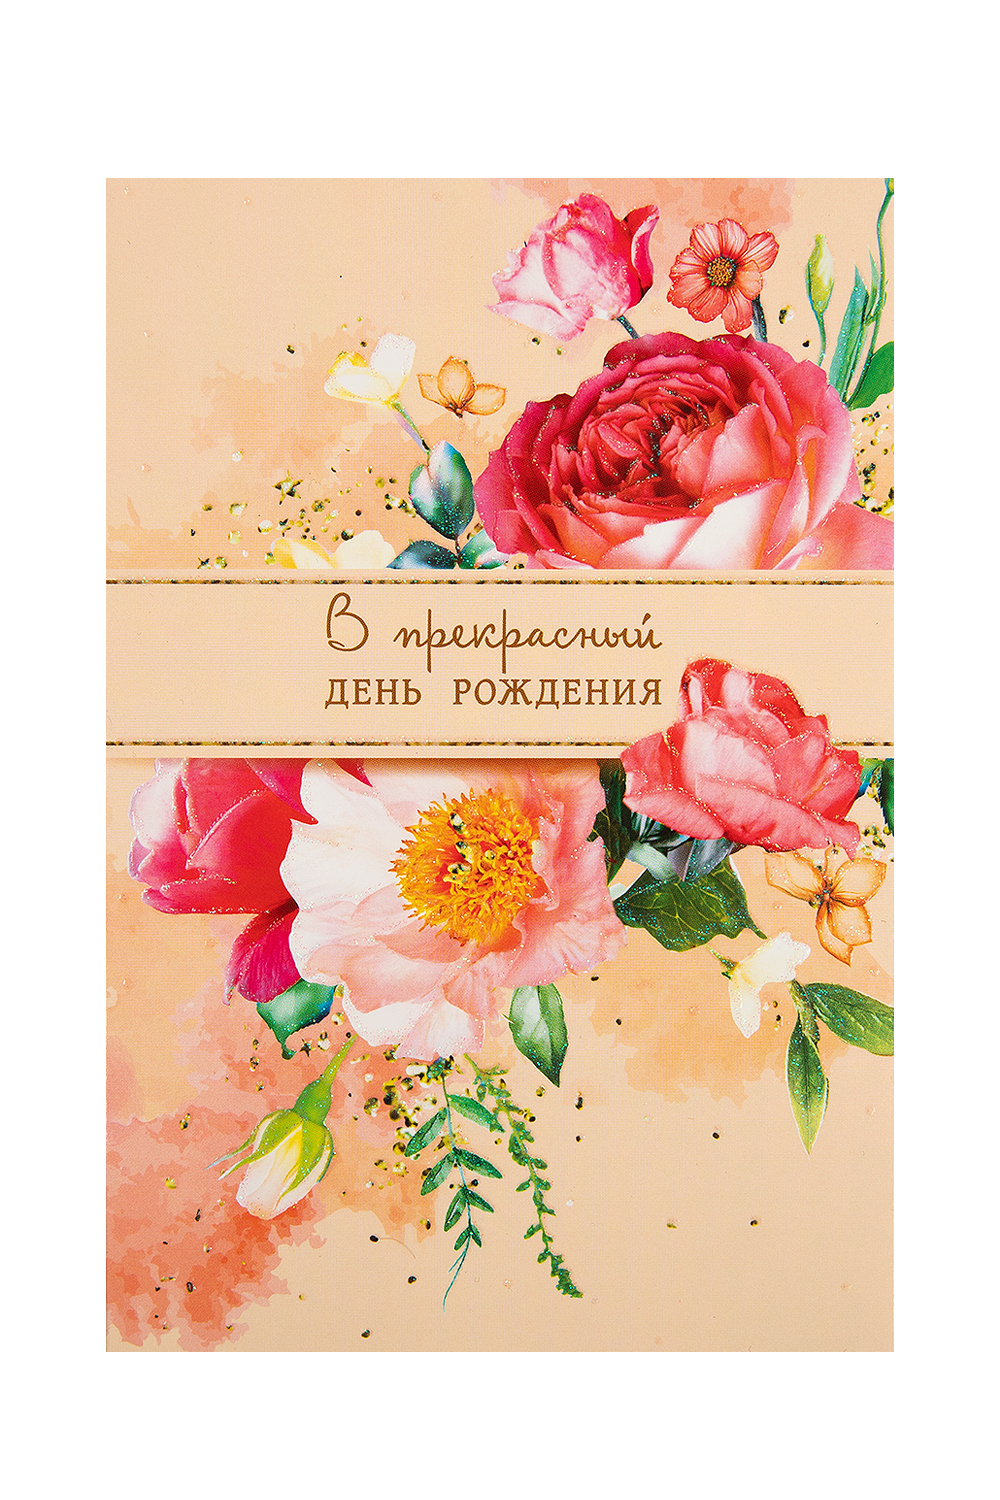 Купить оригинальные дизайнерские открытки в СПБ | Аксессуар для букета цветов